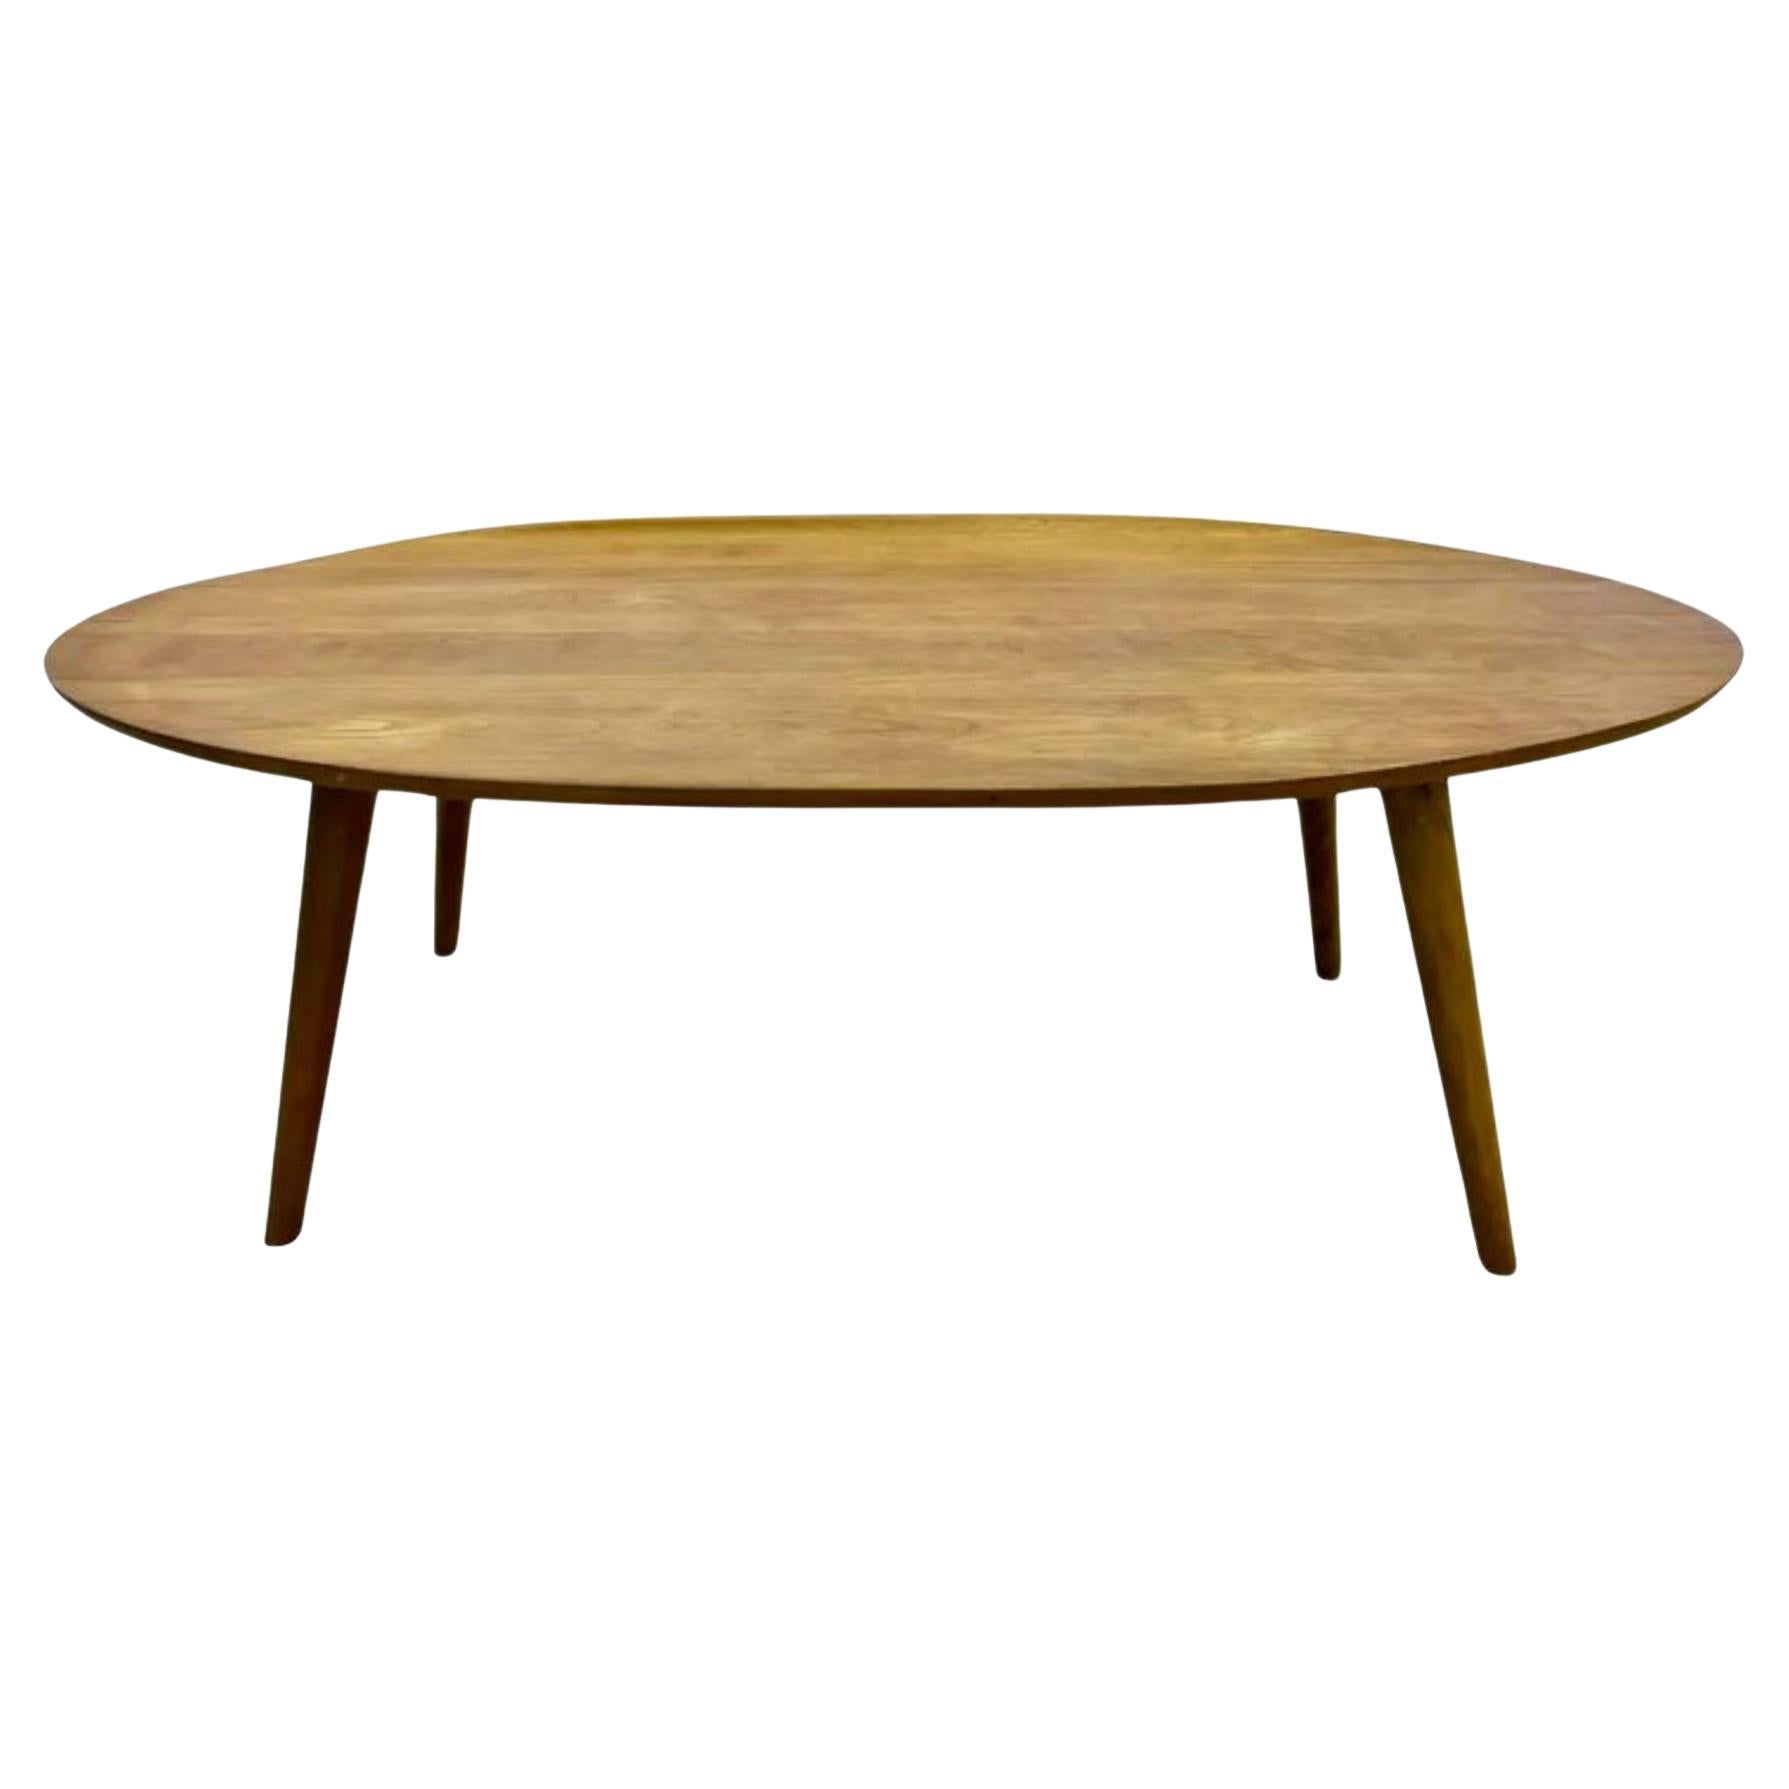 Table basse Conant Ball conçue par Russel Wright, datant du milieu du siècle dernier